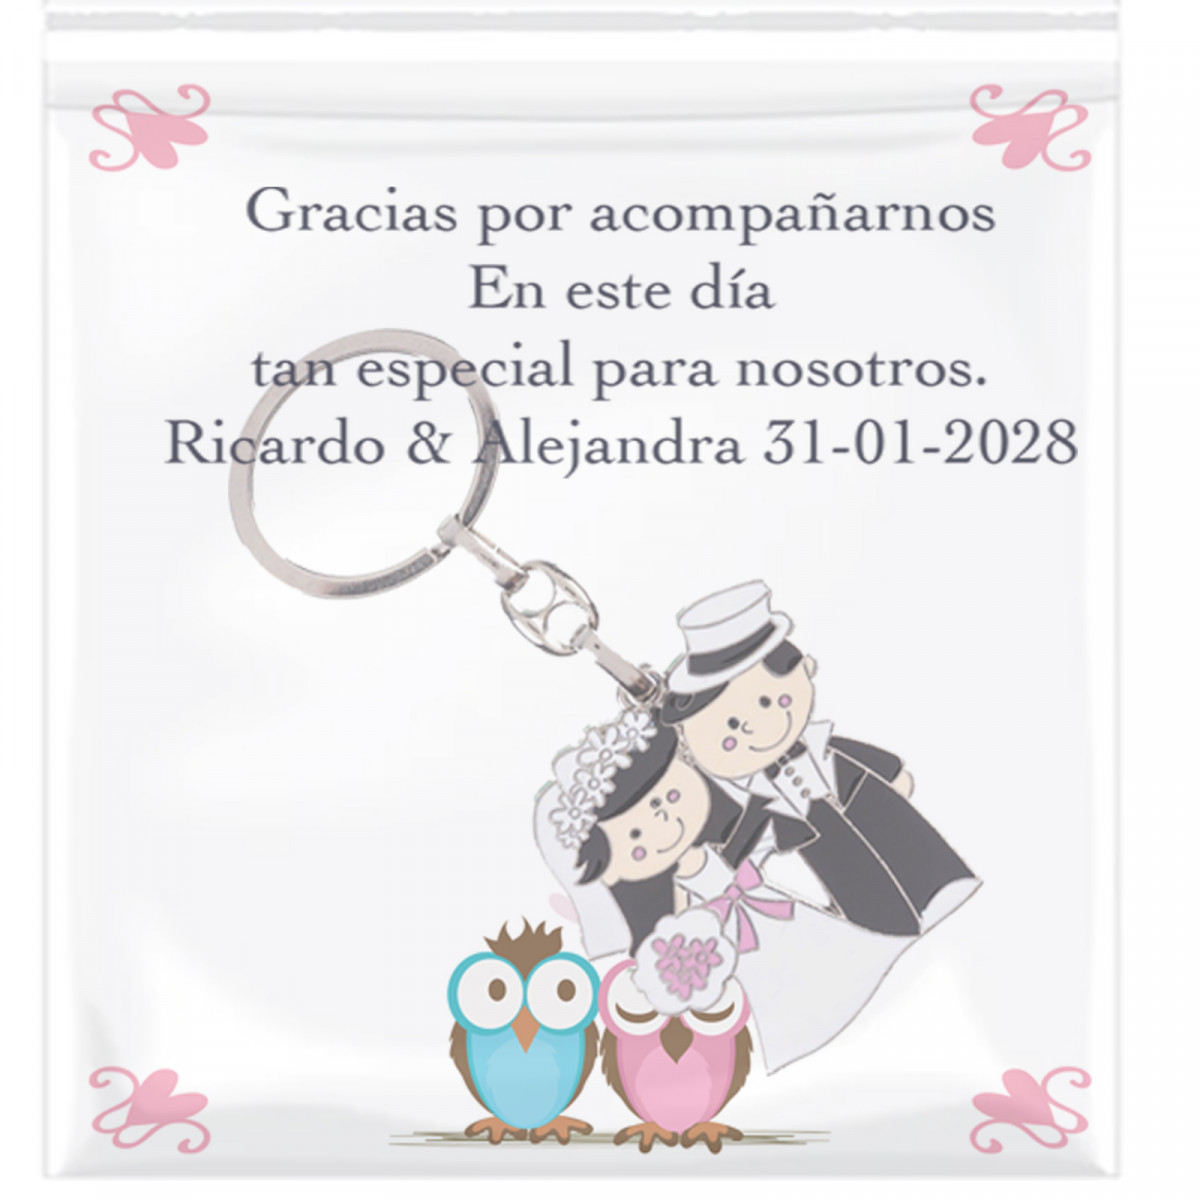 Chaveiro dos noivos recém casados com cartão personalizado